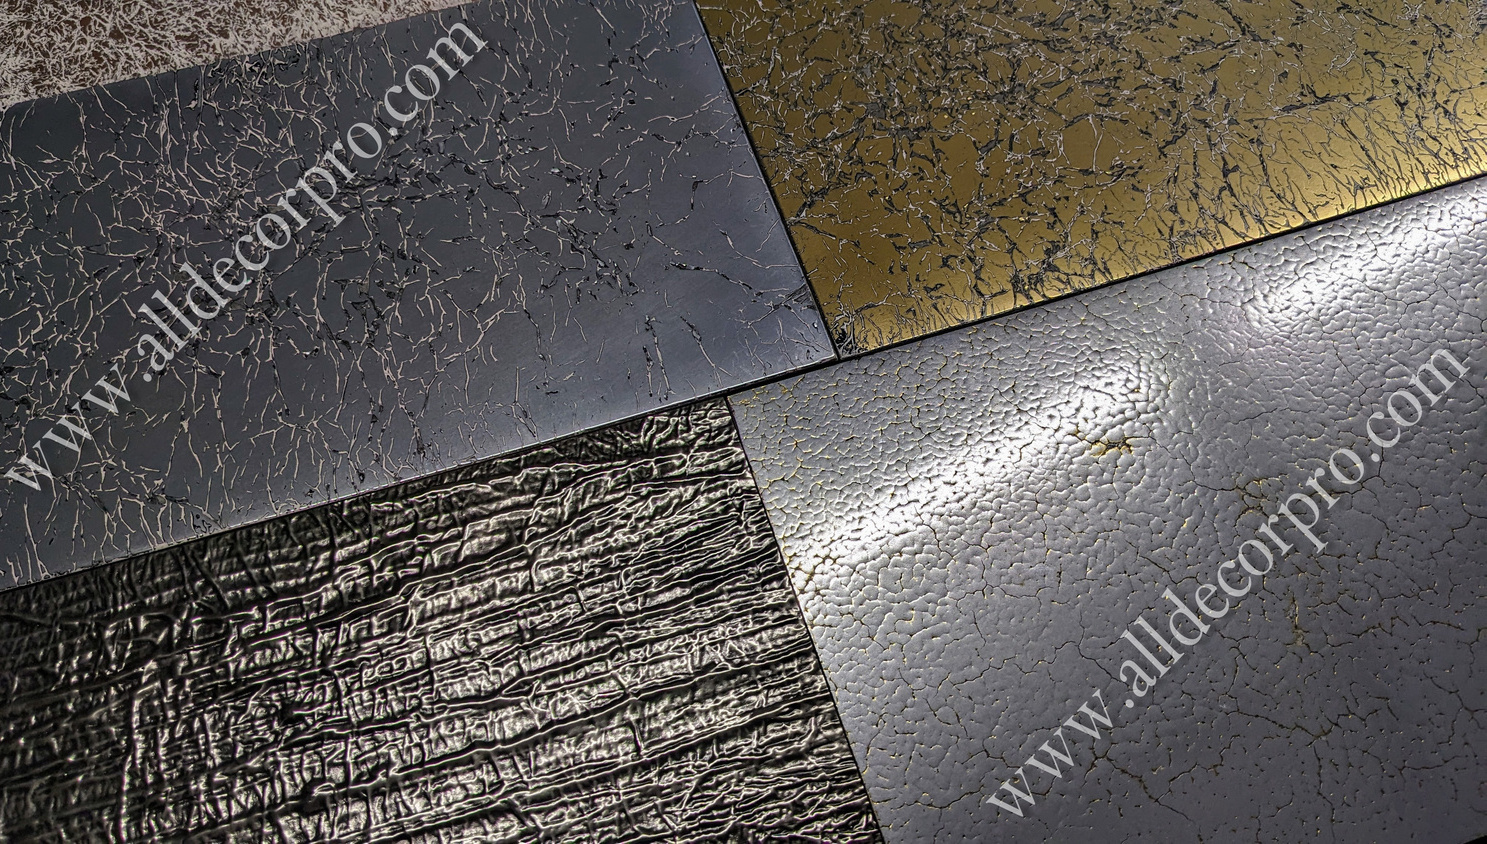 Образцы декоративного покрытия жидкий металл Metallhaut с текстурным эффектом